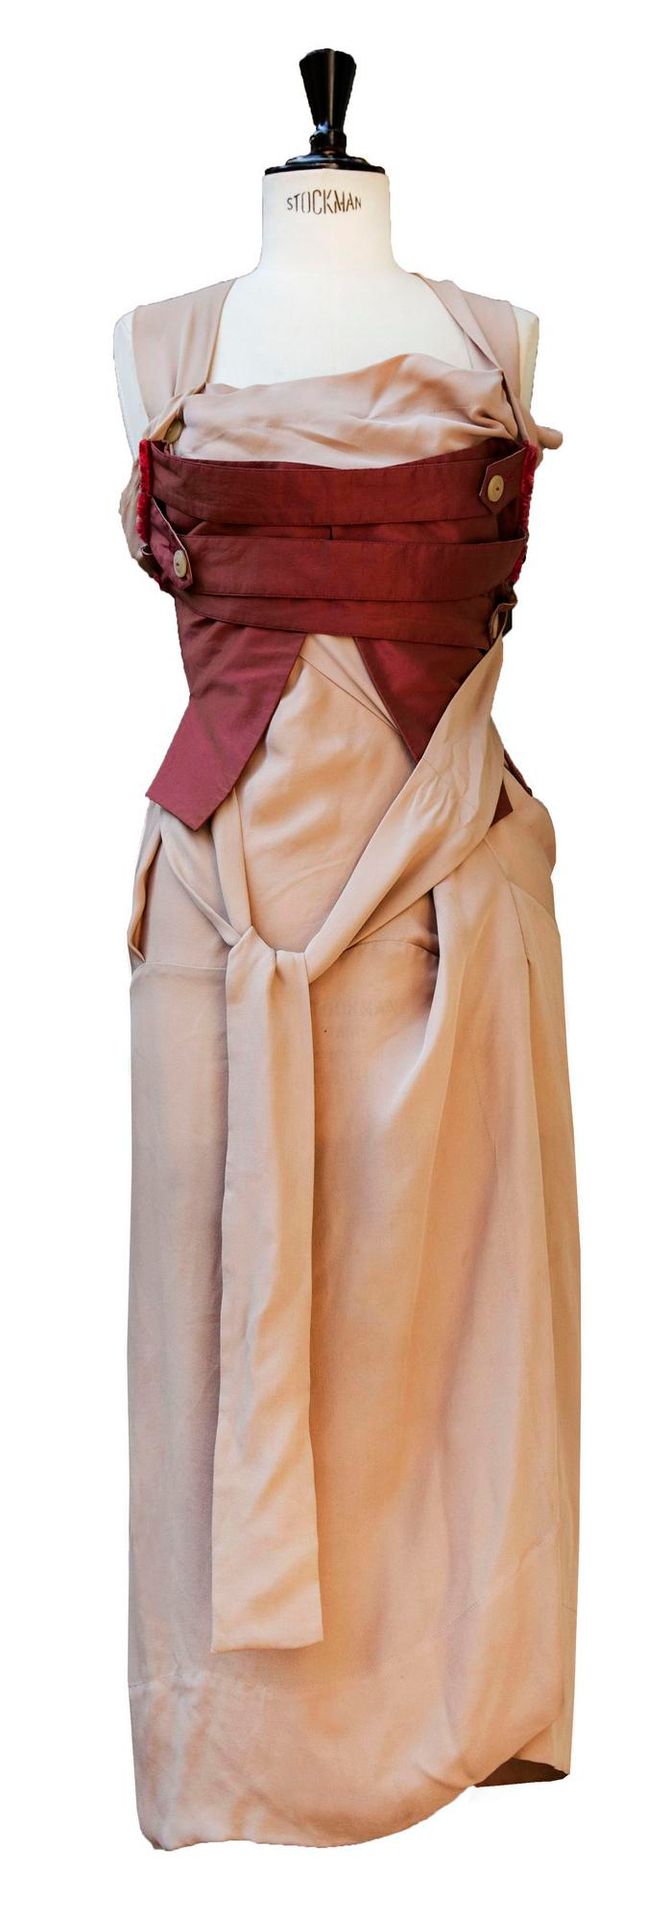 Null 薇薇安-韦斯特伍德

盔甲胸衣裙



描述。

淡粉色的绉绸与插入的紫红色棉质 "盔甲 "紧身衣组成了这条中世纪风格的裙子。左侧有一个深的侧缝的垂坠&hellip;